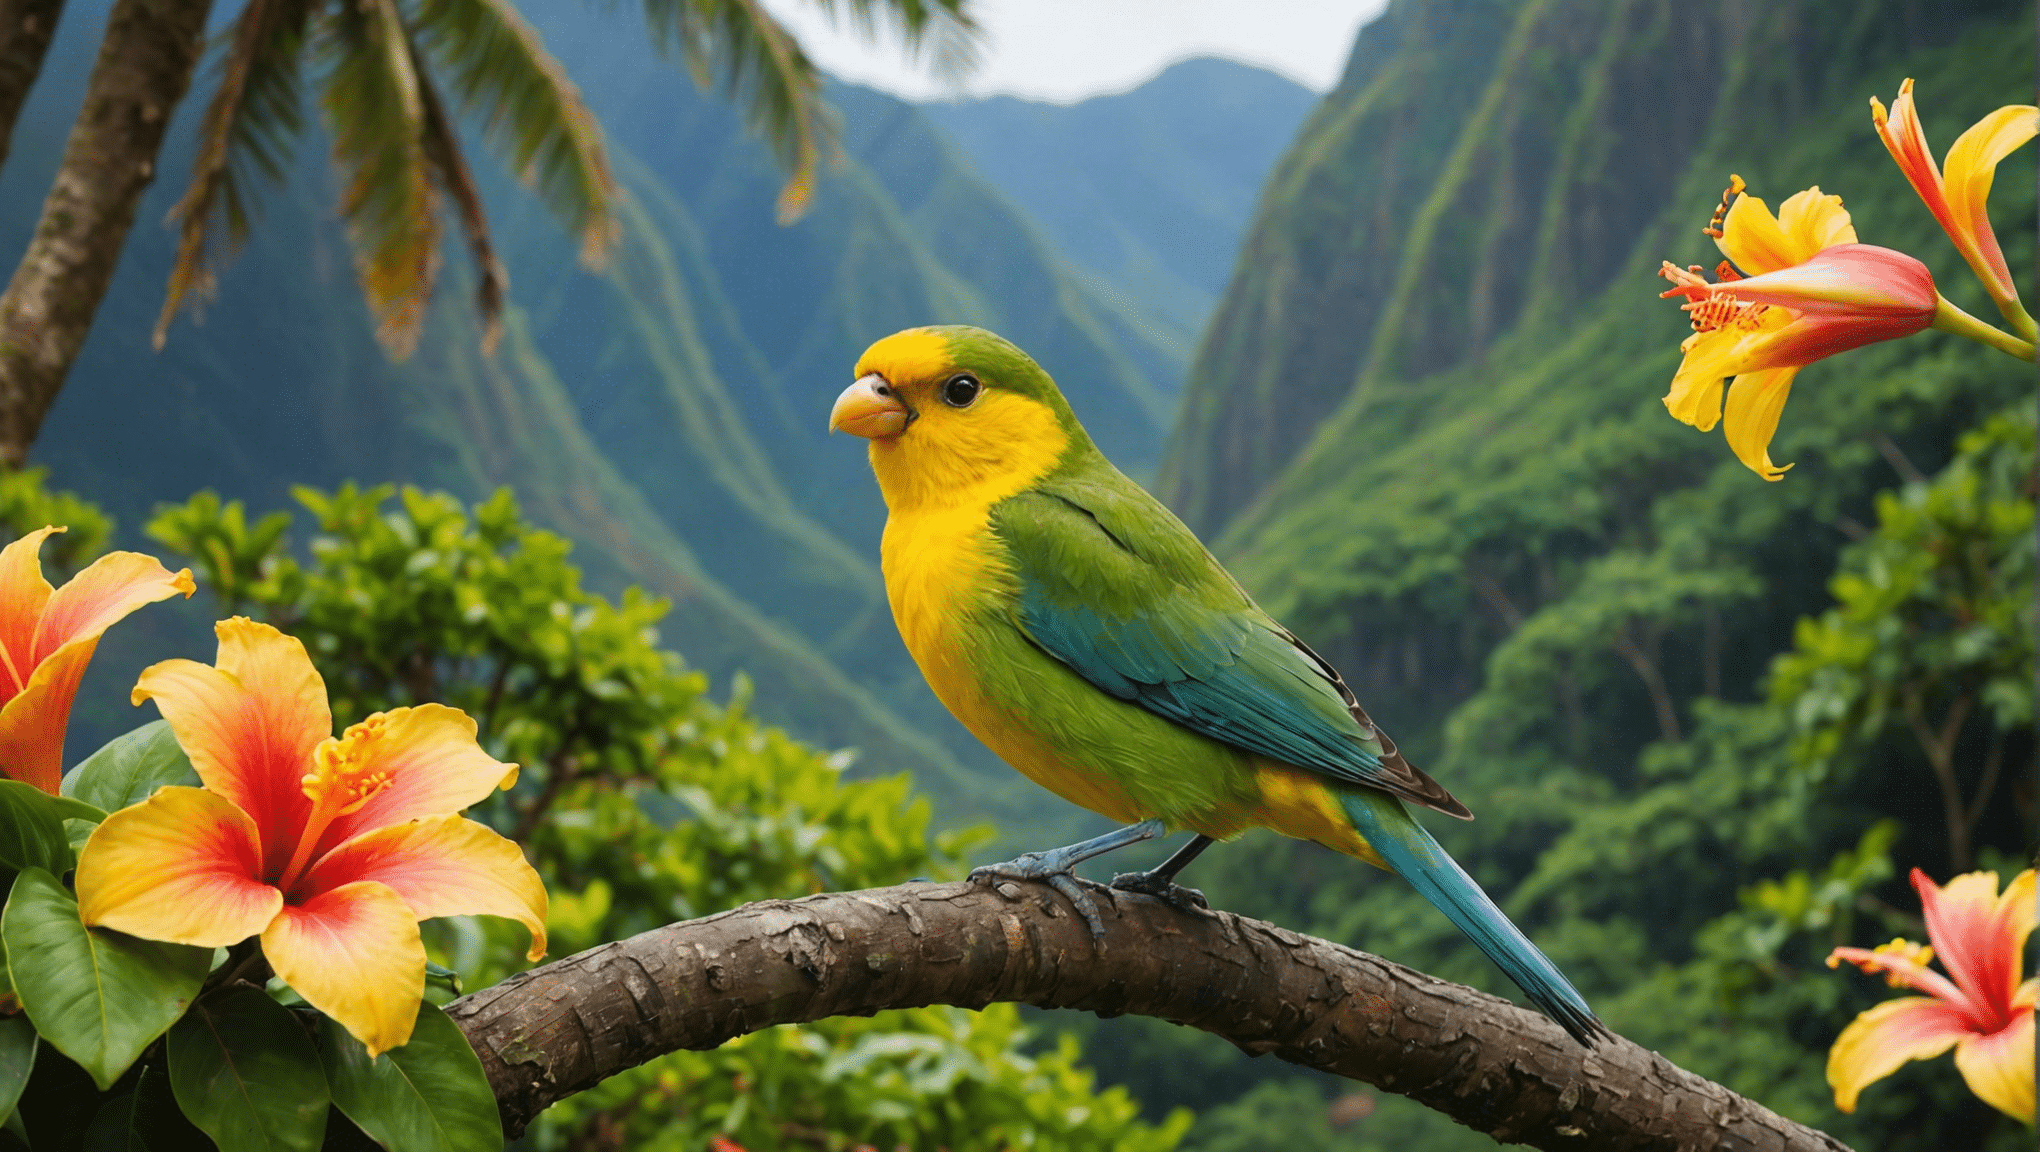 לגלות את מיני הציפורים הייחודיים של הוואי ואת המאפיינים המרתקים שלהם. חקור את חיי העופות הייחודיים של גן עדן האי הזה.